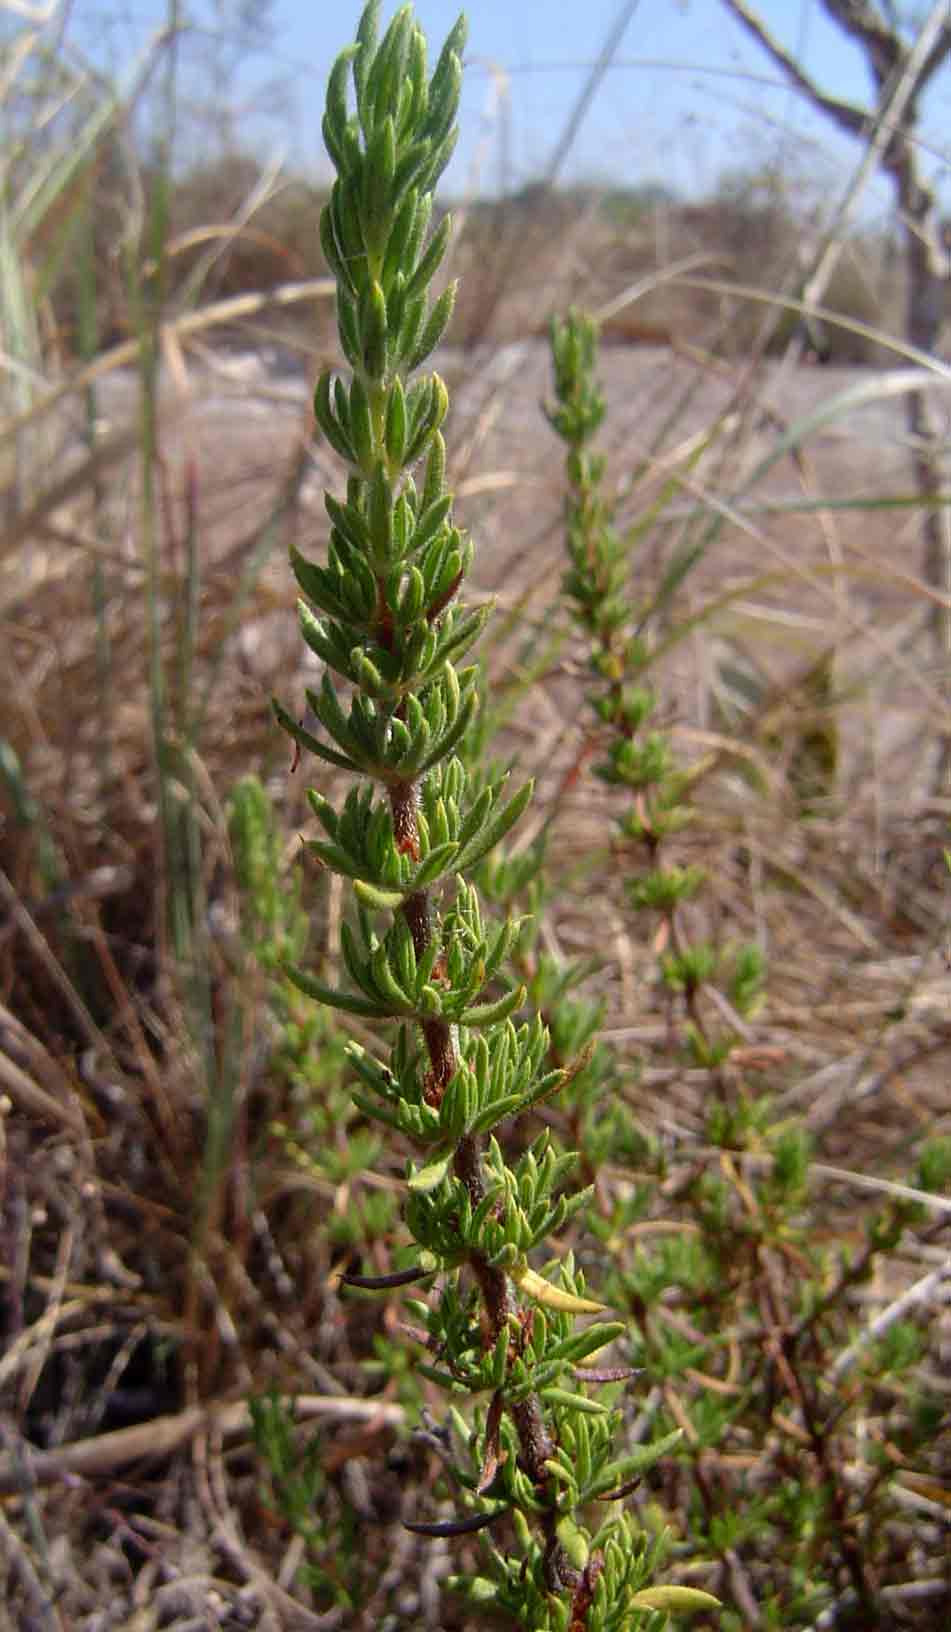 Anthospermum zimbabwense